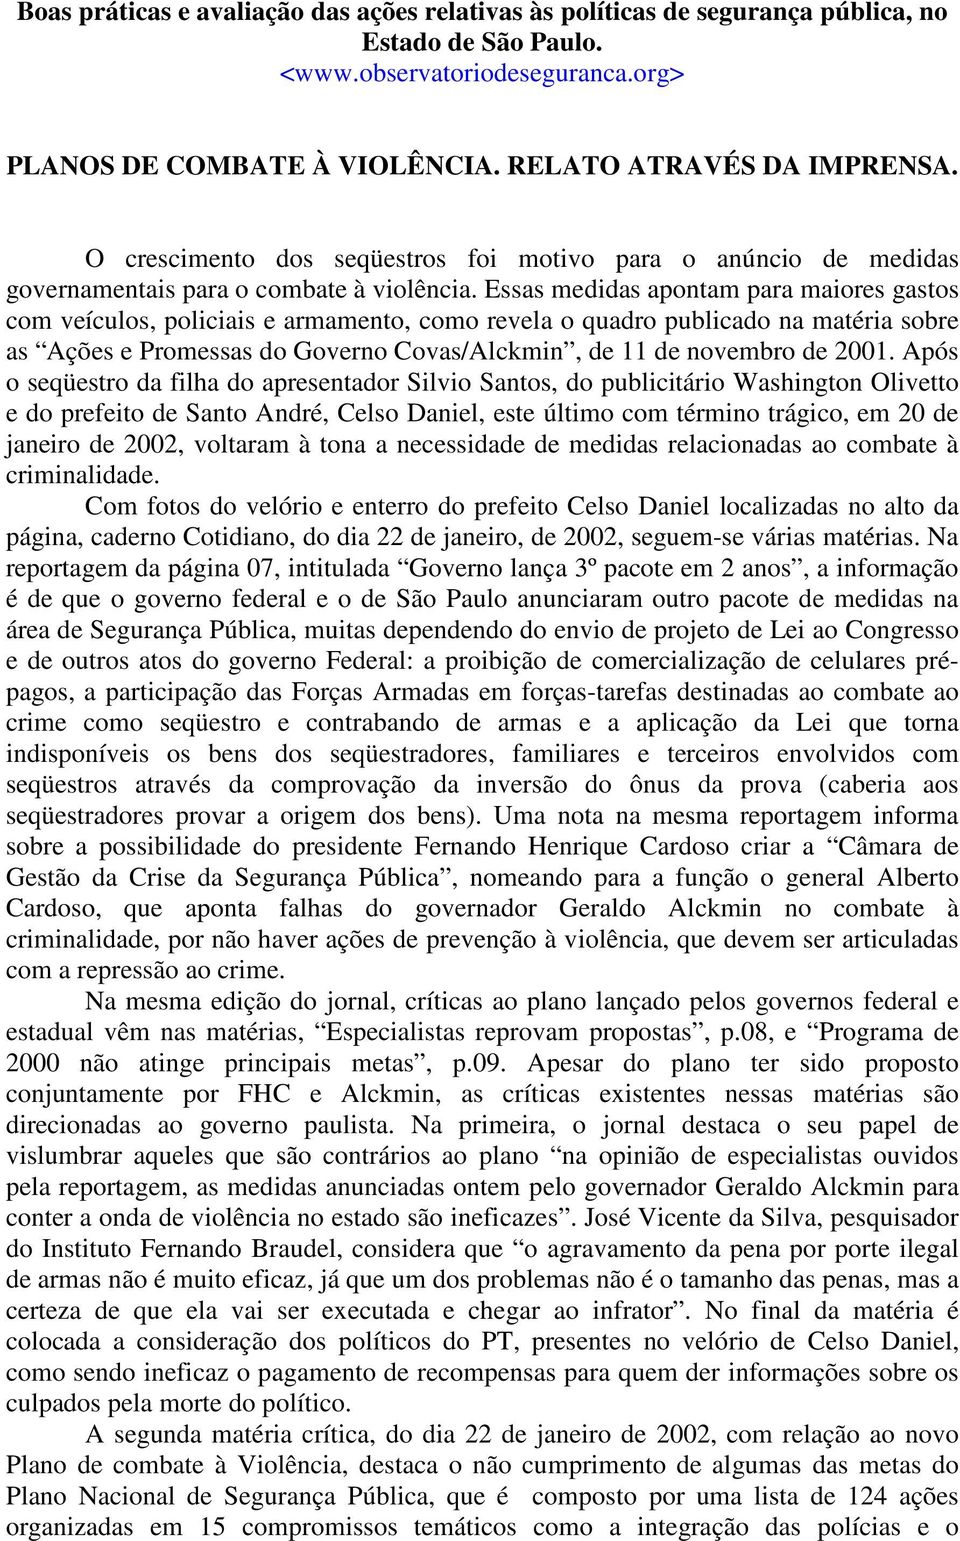 Essas medidas apontam para maiores gastos com veículos, policiais e armamento, como revela o quadro publicado na matéria sobre as Ações e Promessas do Governo Covas/Alckmin, de 11 de novembro de 2001.